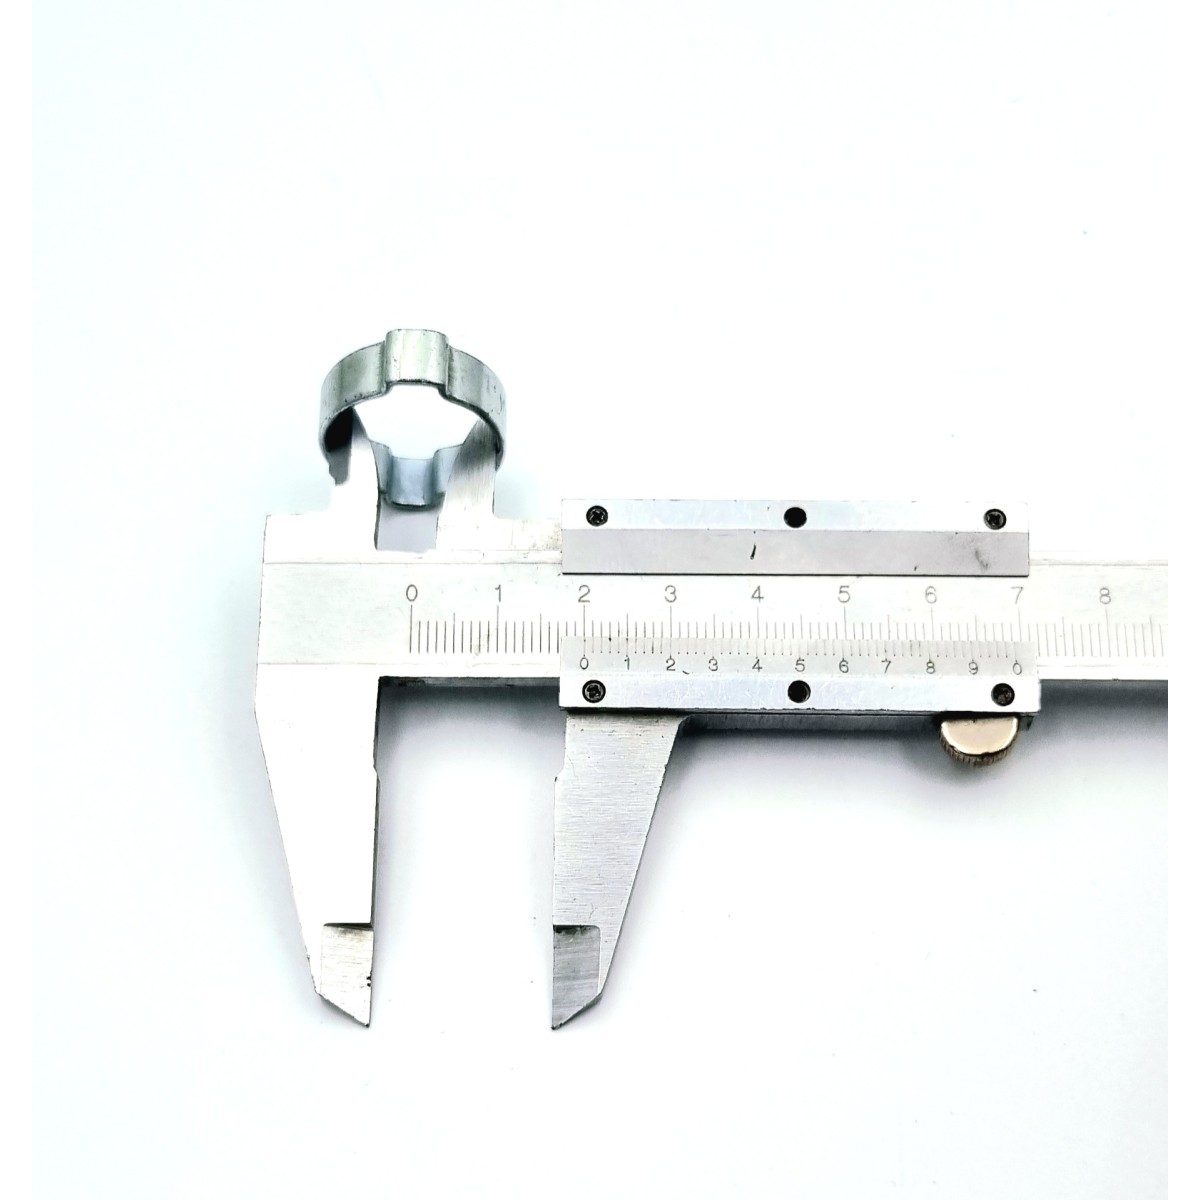 Collier de serrage inox type mini pour durite diam. extérieur 15-17mm